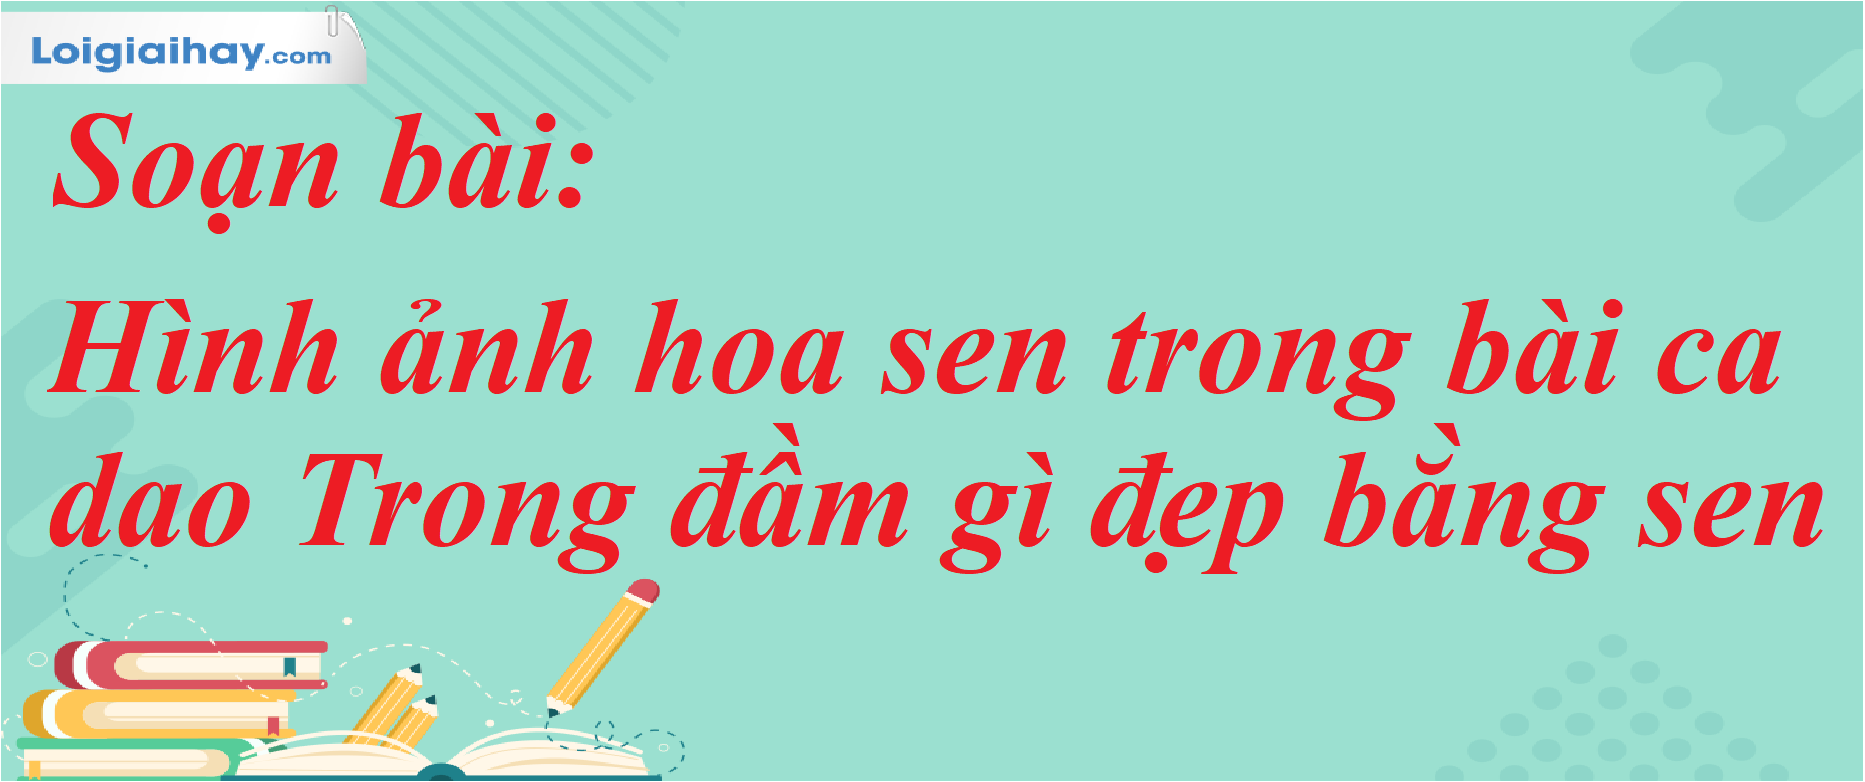 Hình ảnh hoa sen trong bài ca dao: Một trong những biểu tượng đặc trưng nhất của văn hóa Việt Nam. Hãy cùng ngắm nhìn những hình ảnh tuyệt đẹp về hoa sen và tìm hiểu về ý nghĩa của chúng trong bài ca dao dân gian Việt Nam.